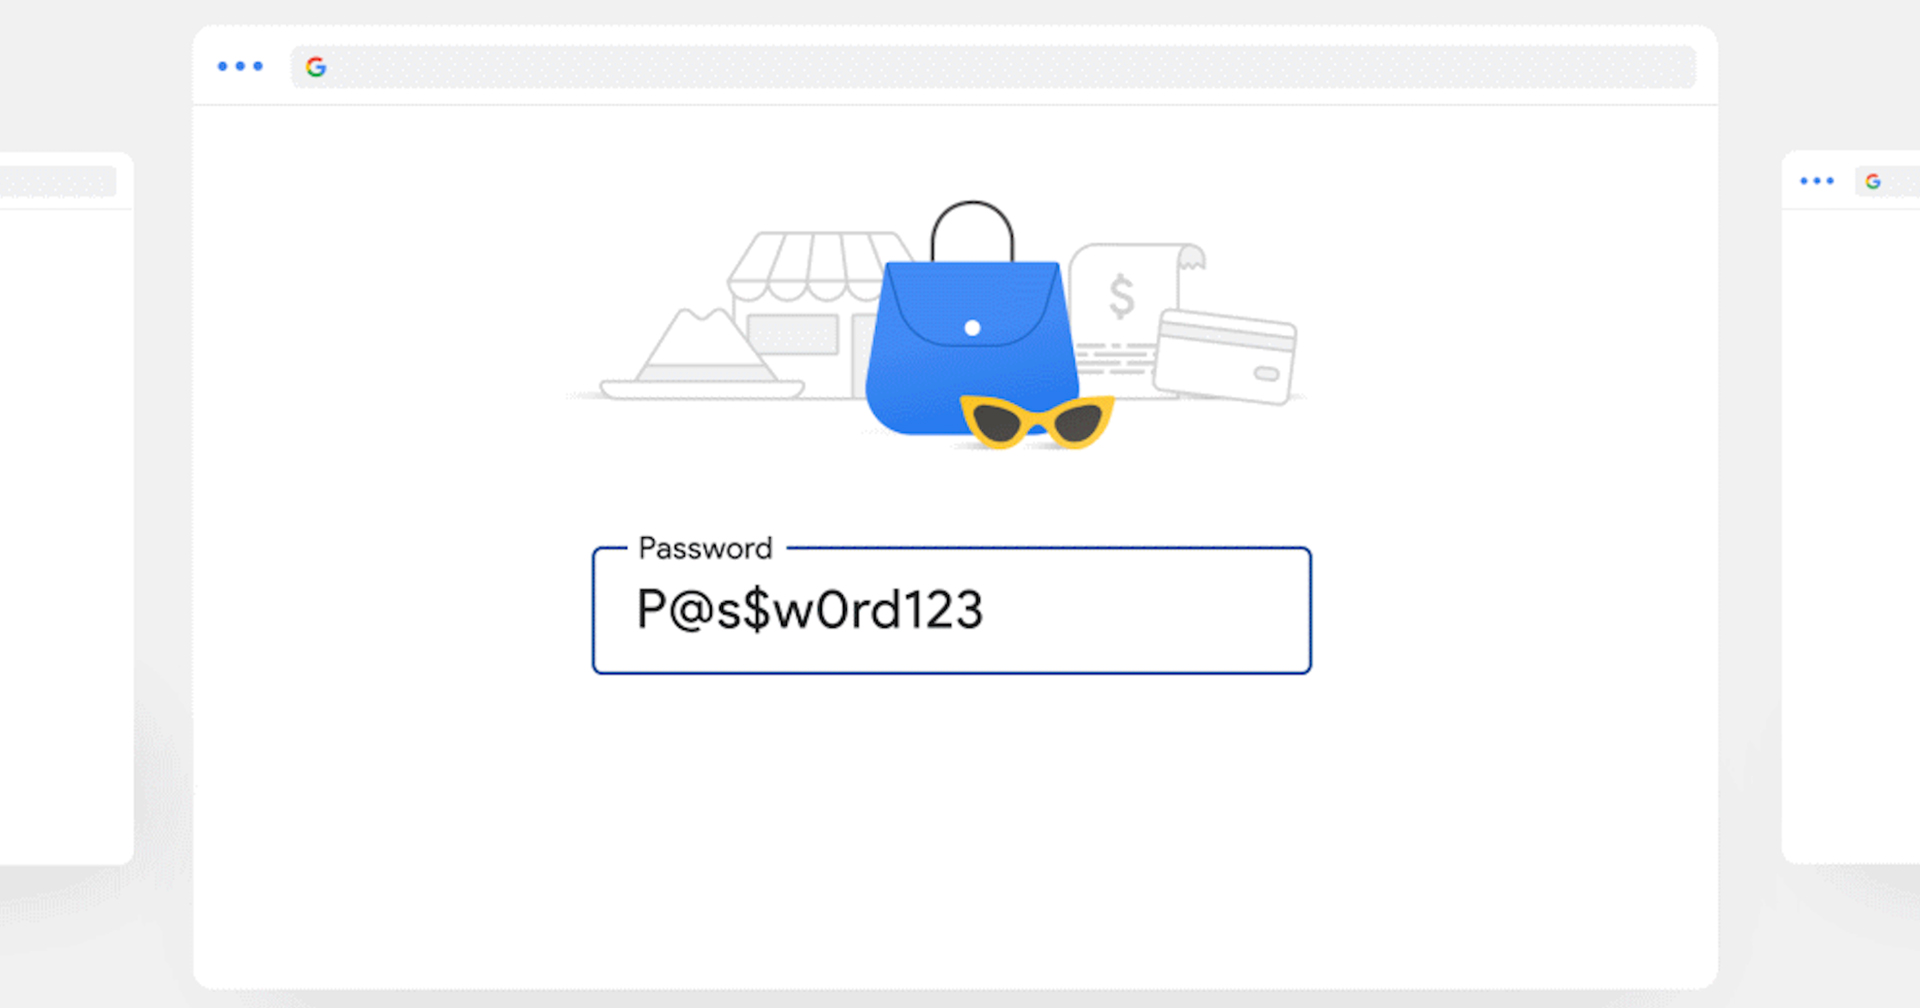 ตัดไฟต้นลม!! รหัสหลุดบ่อย Microsoft ให้ผู้ใช้เข้าถึงบัญชีโดยไม่ต้องใช้รหัสผ่านได้แล้ว